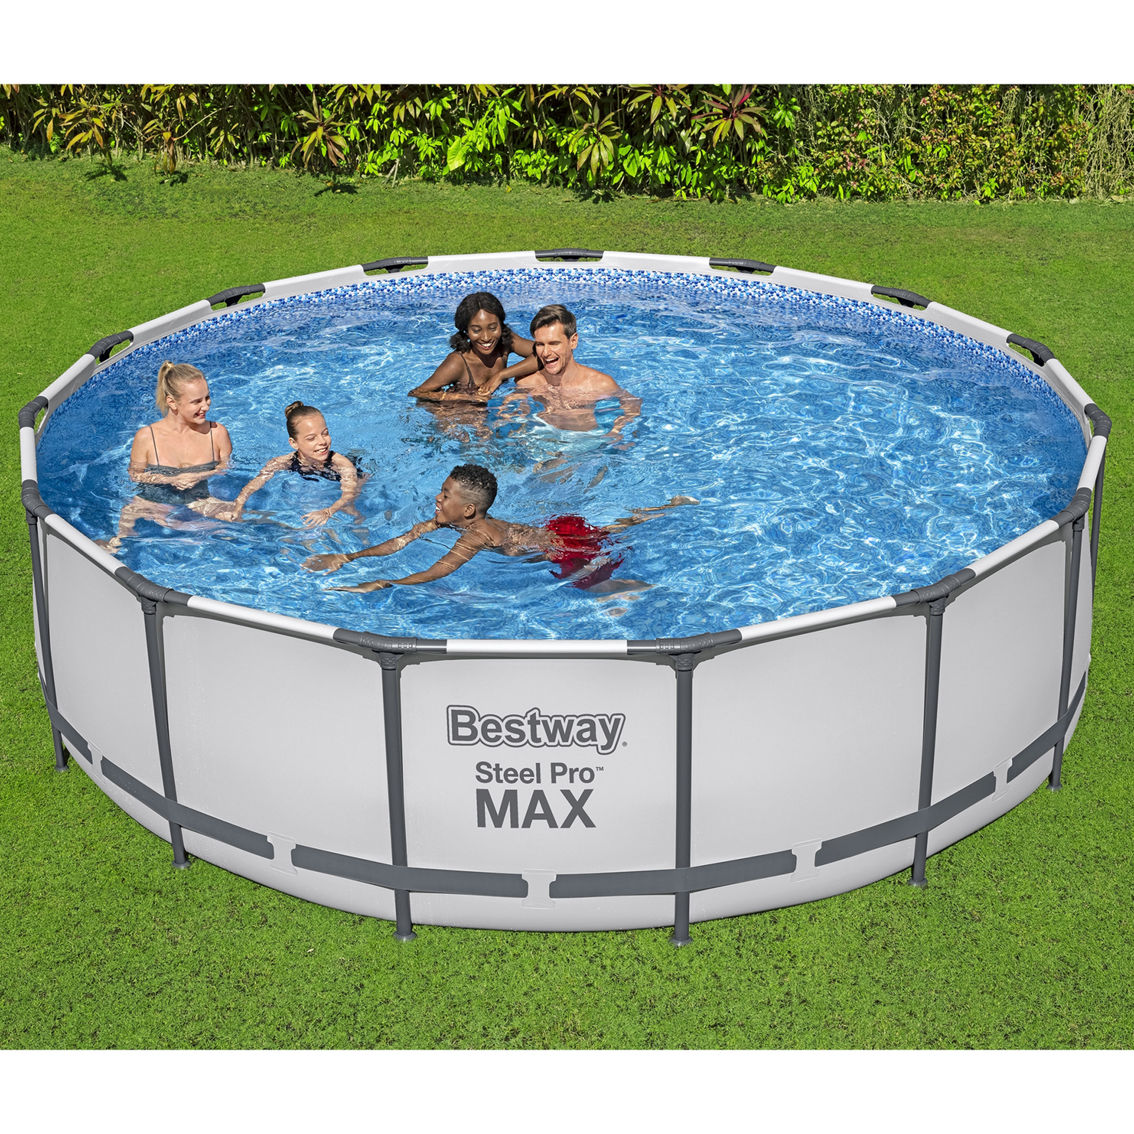 Bestway Steel Pro MAX: Pool Set - Image 6 of 9